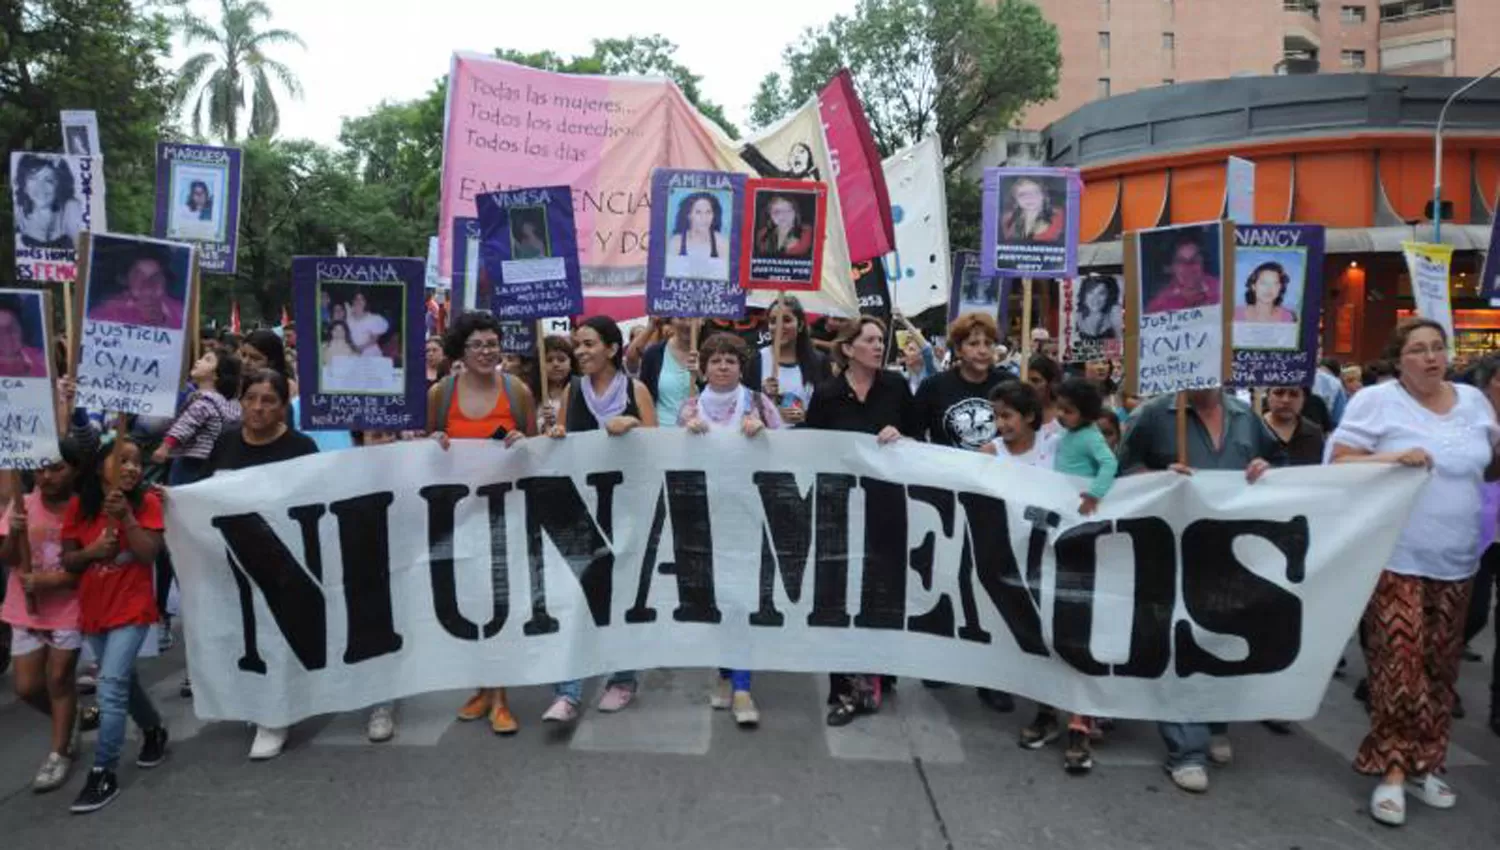 Tucumán superó a Mendoza en cantidad de femicidios durante el primer semestre